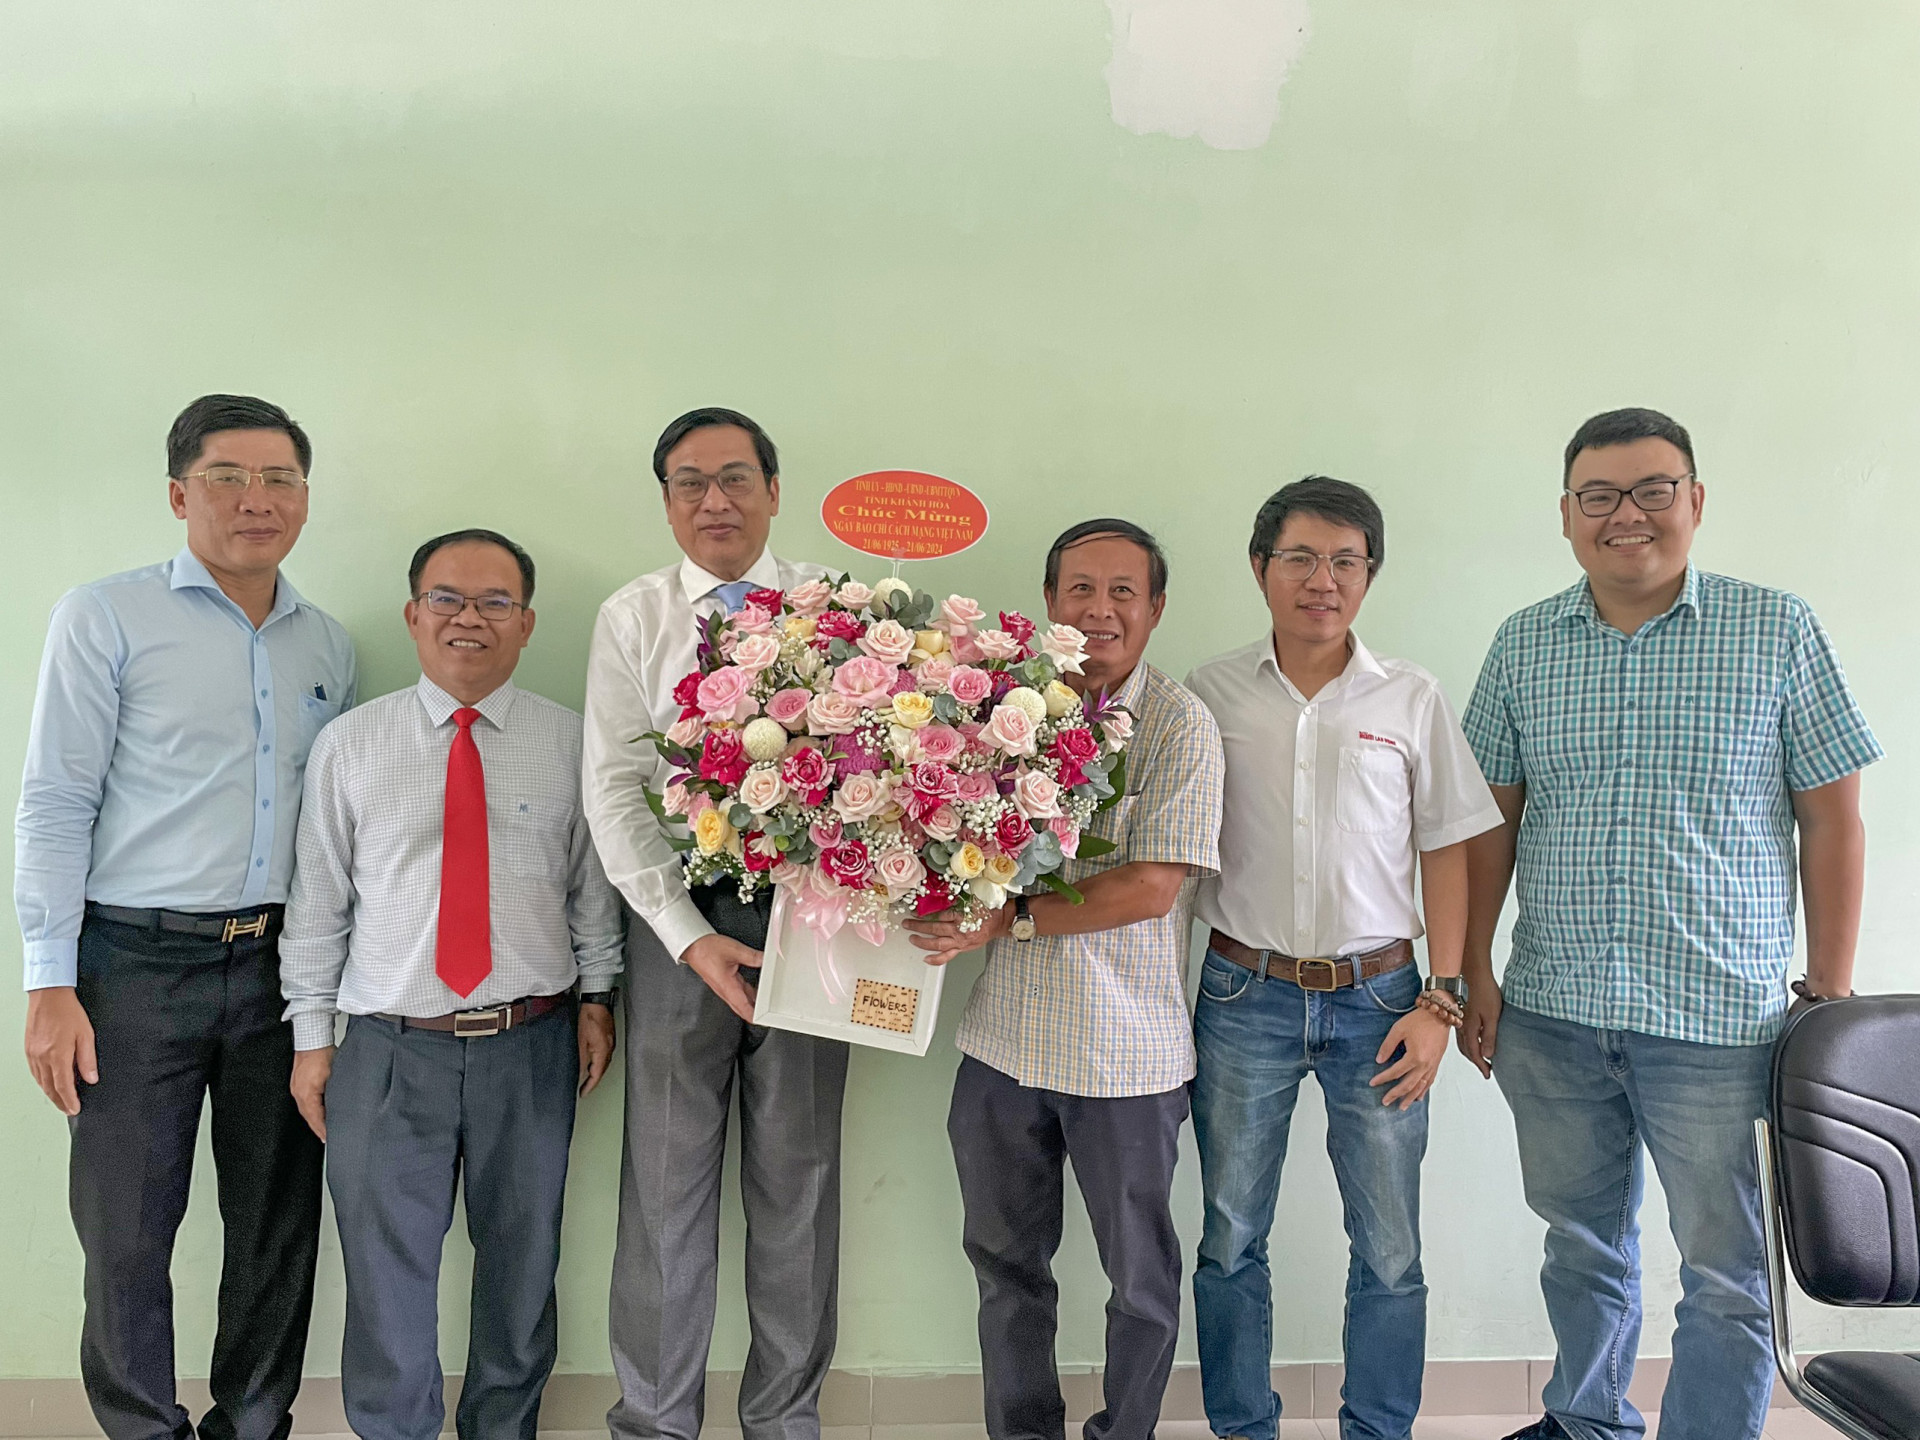 Đồng chí Lê Hữu Thọ tặng hoa chúc mừng lãnh đạo Văn phòng đại diện Báo Người lao động nhân Ngày Báo chí Cách mạng Việt Nam.